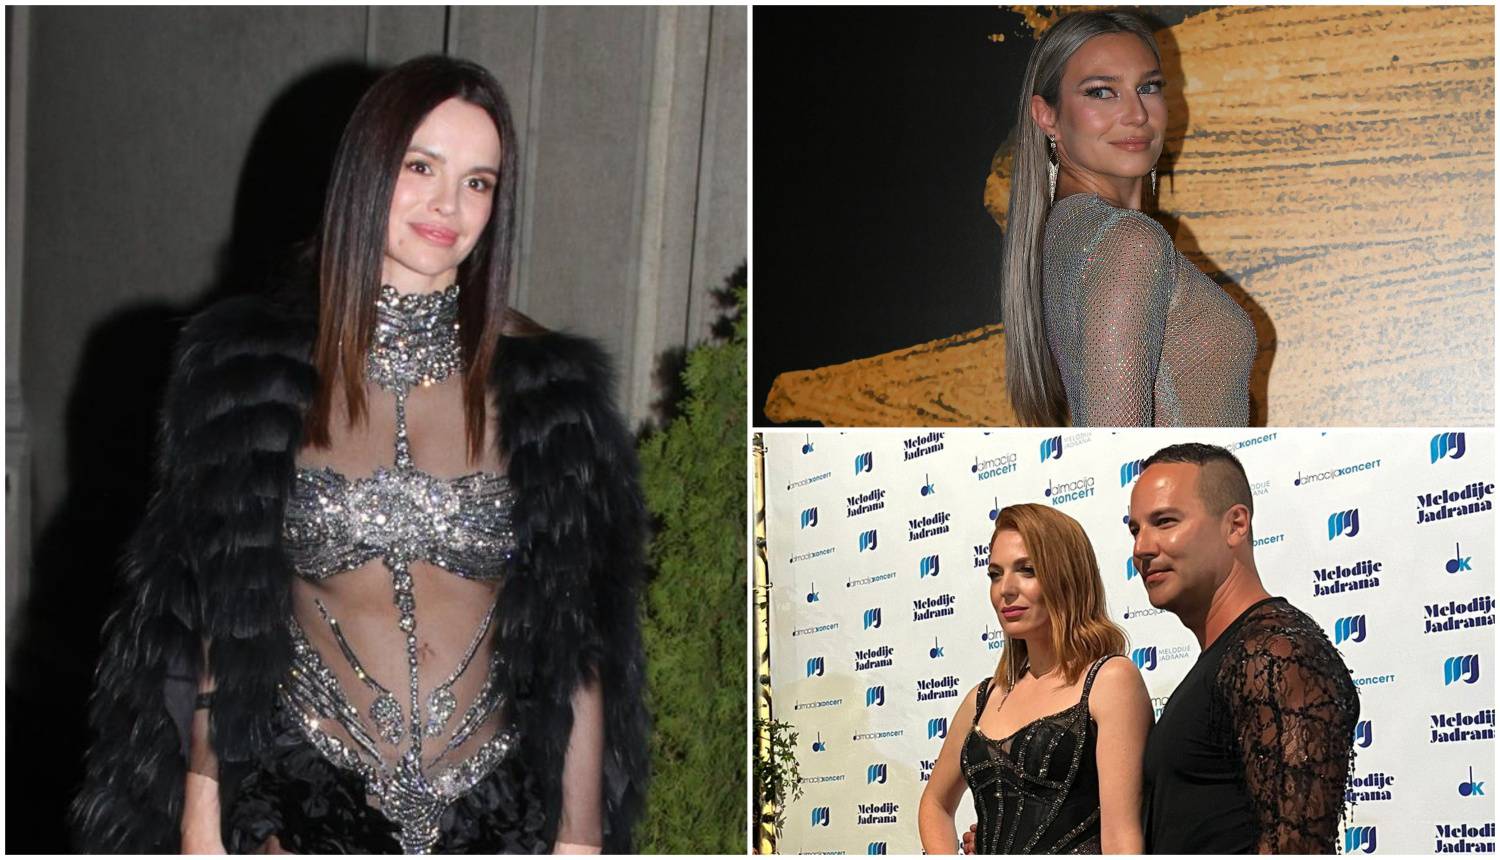 Nataša Janjić nosila haljinu kao i Seve, Sonja u prozirnoj haljini po uzoru na Rihannu i Emily...